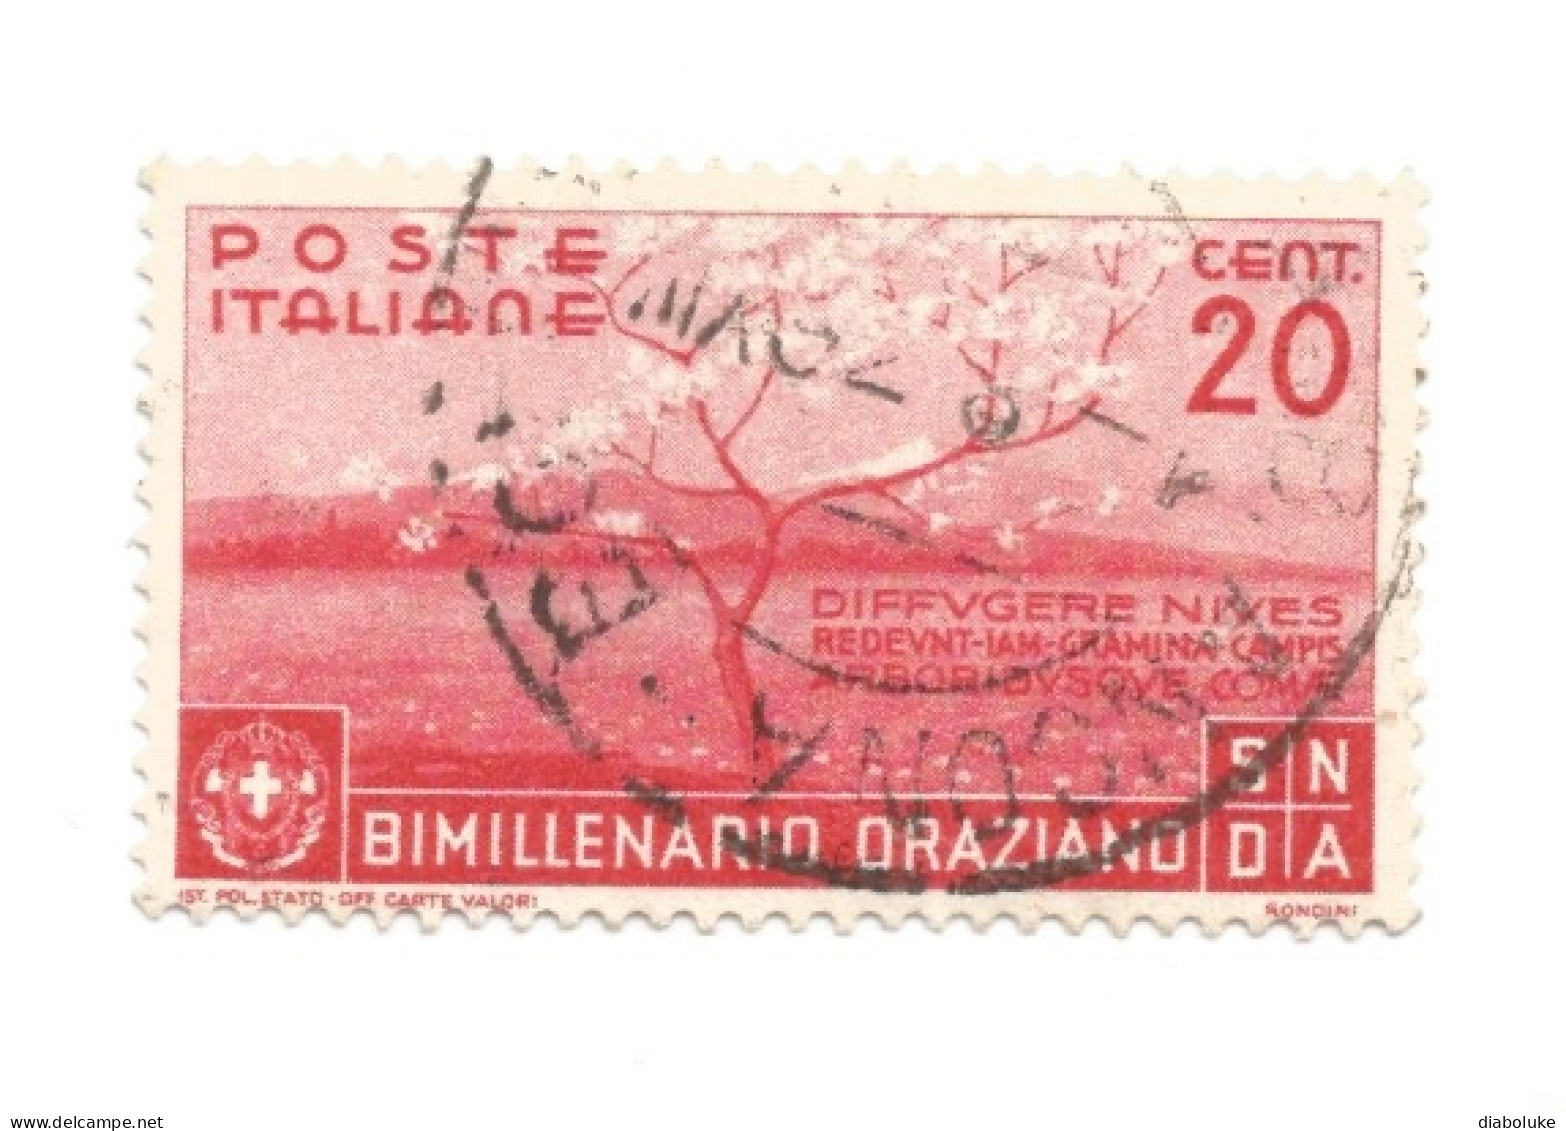 (REGNO D'ITALIA) 1936, BIMILLENARIO ORAZIANO CON POSTA AEREA - Serie Di 13 Francobolli Usati, Annulli Da Periziare - Usati